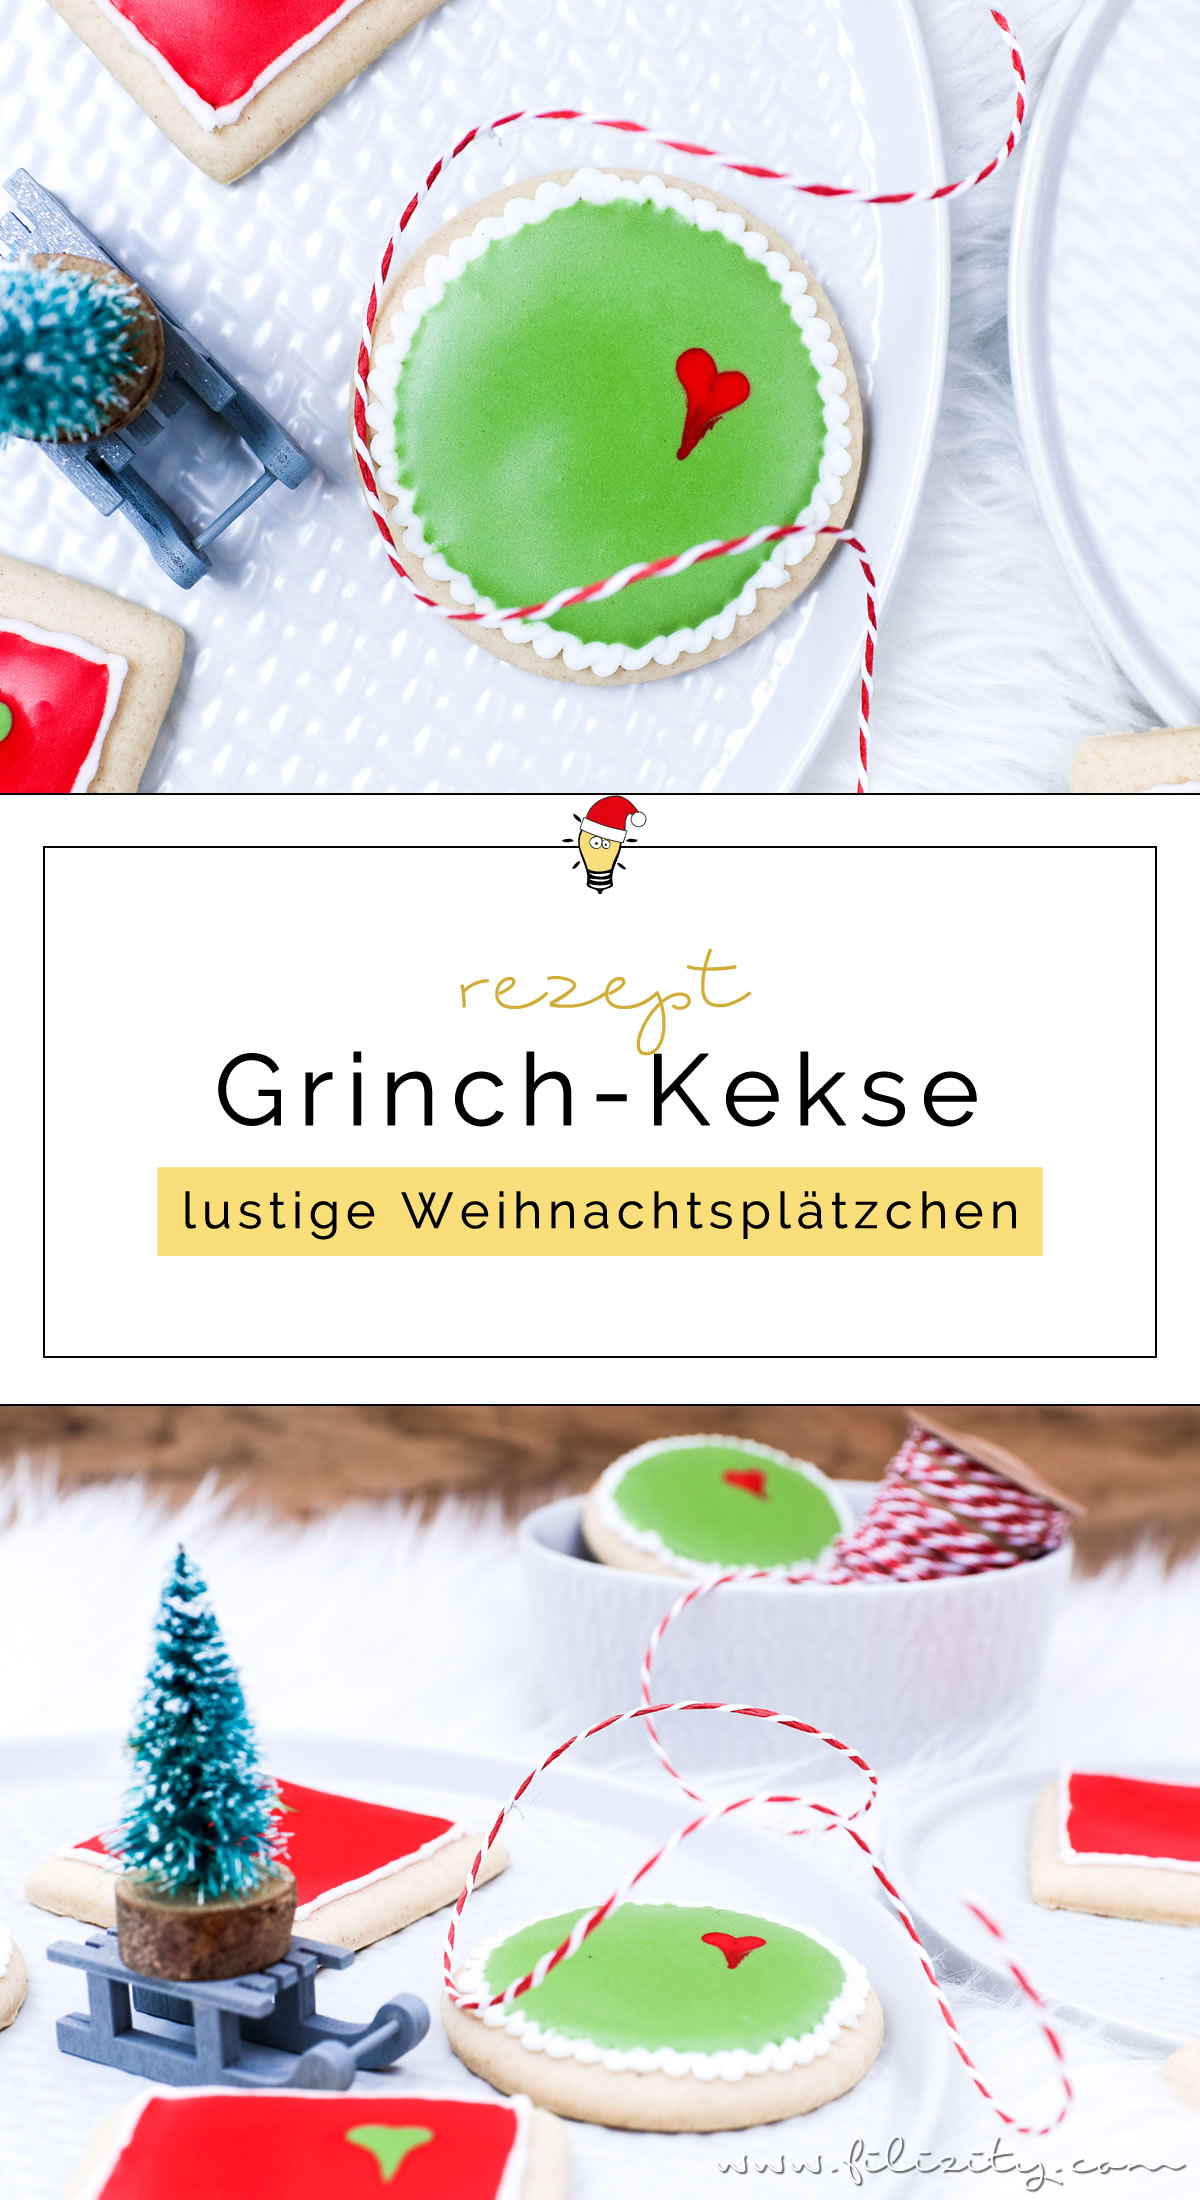 Grinch-Cookies – Weihnachtsplätzchen mal anders | Kekse verzieren mit Royal Icing | Filizity.com | Food-Blog aus dem Rheinland #grinch #weihnachten #plätzchen #weihnachtsbäckerei